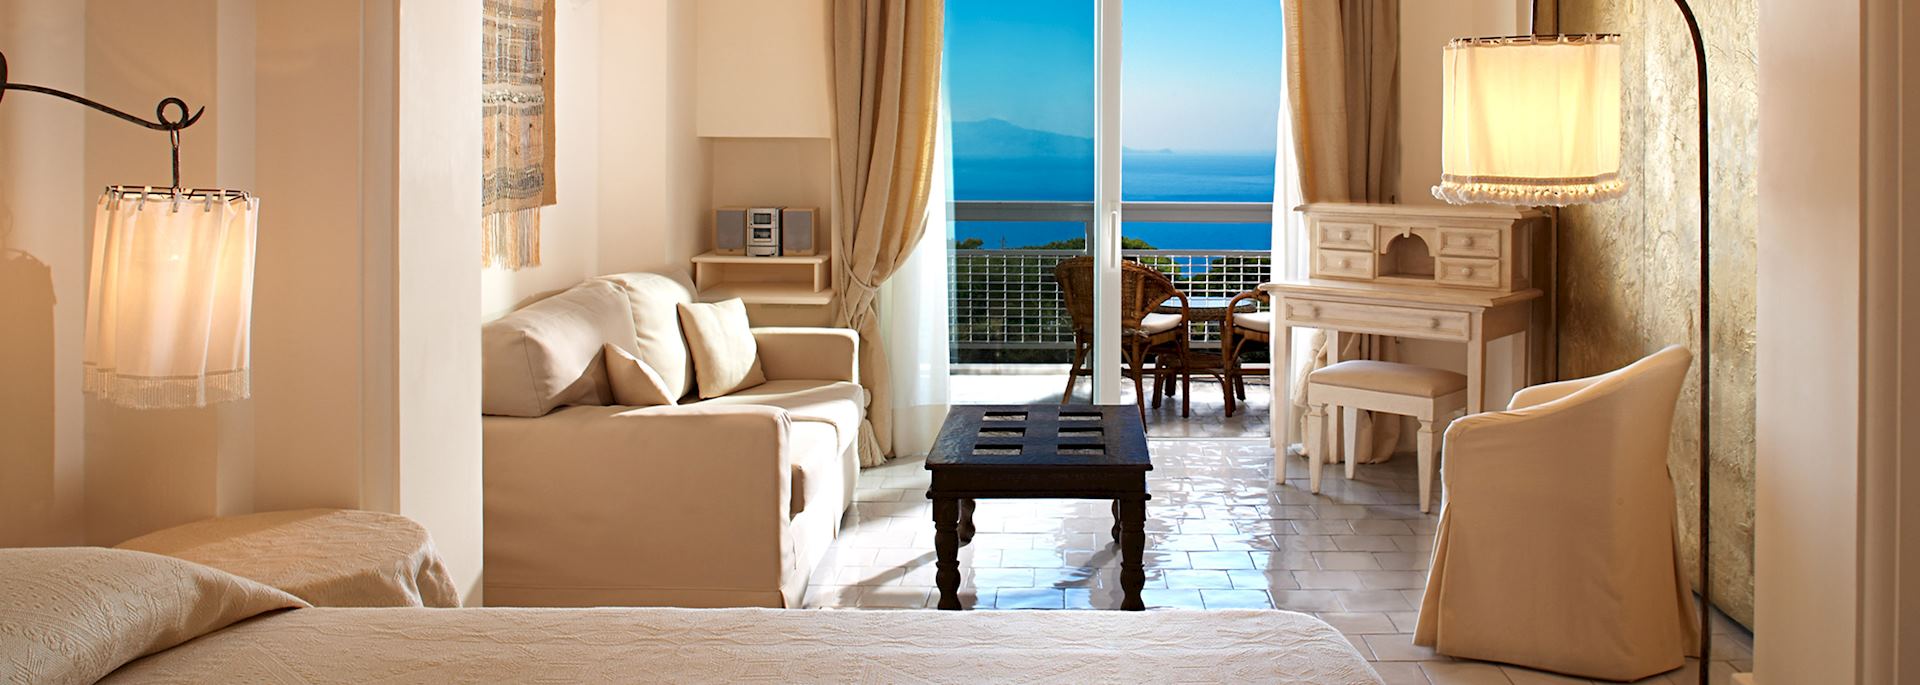 Capri Hotel and Spa